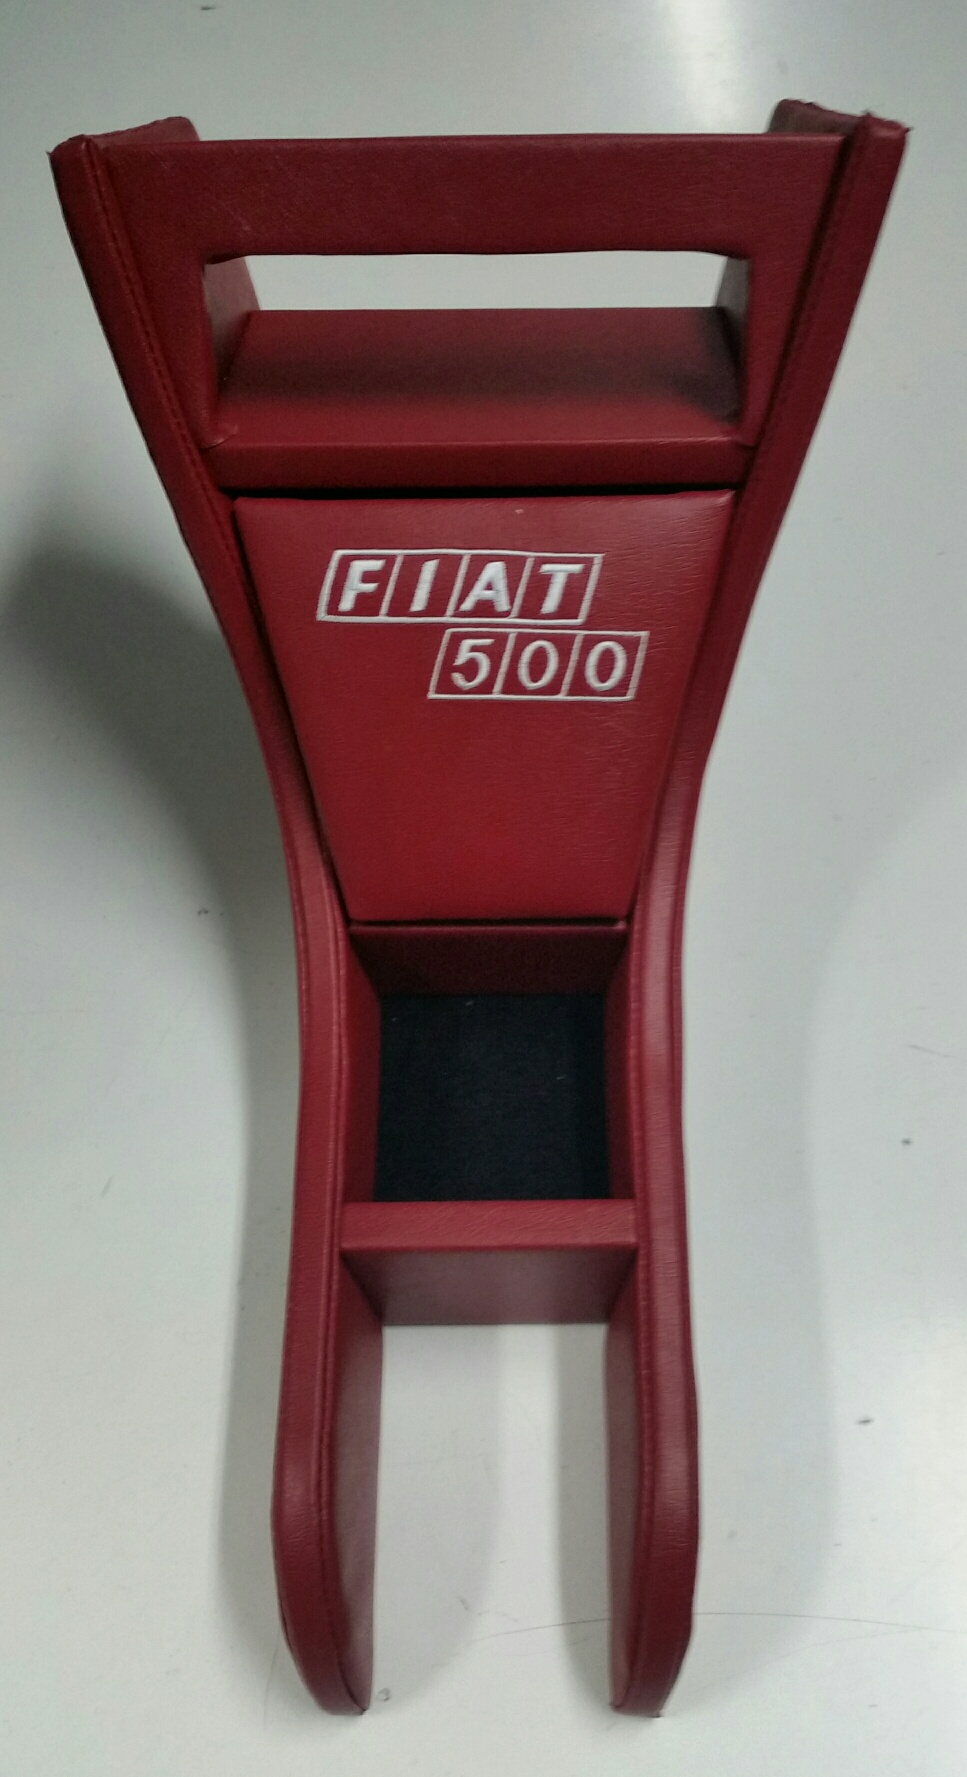 MOBILETTO PER FIAT 500 C/LOGO FIAT 500 COLORE ROSSO COD. TL001/F5